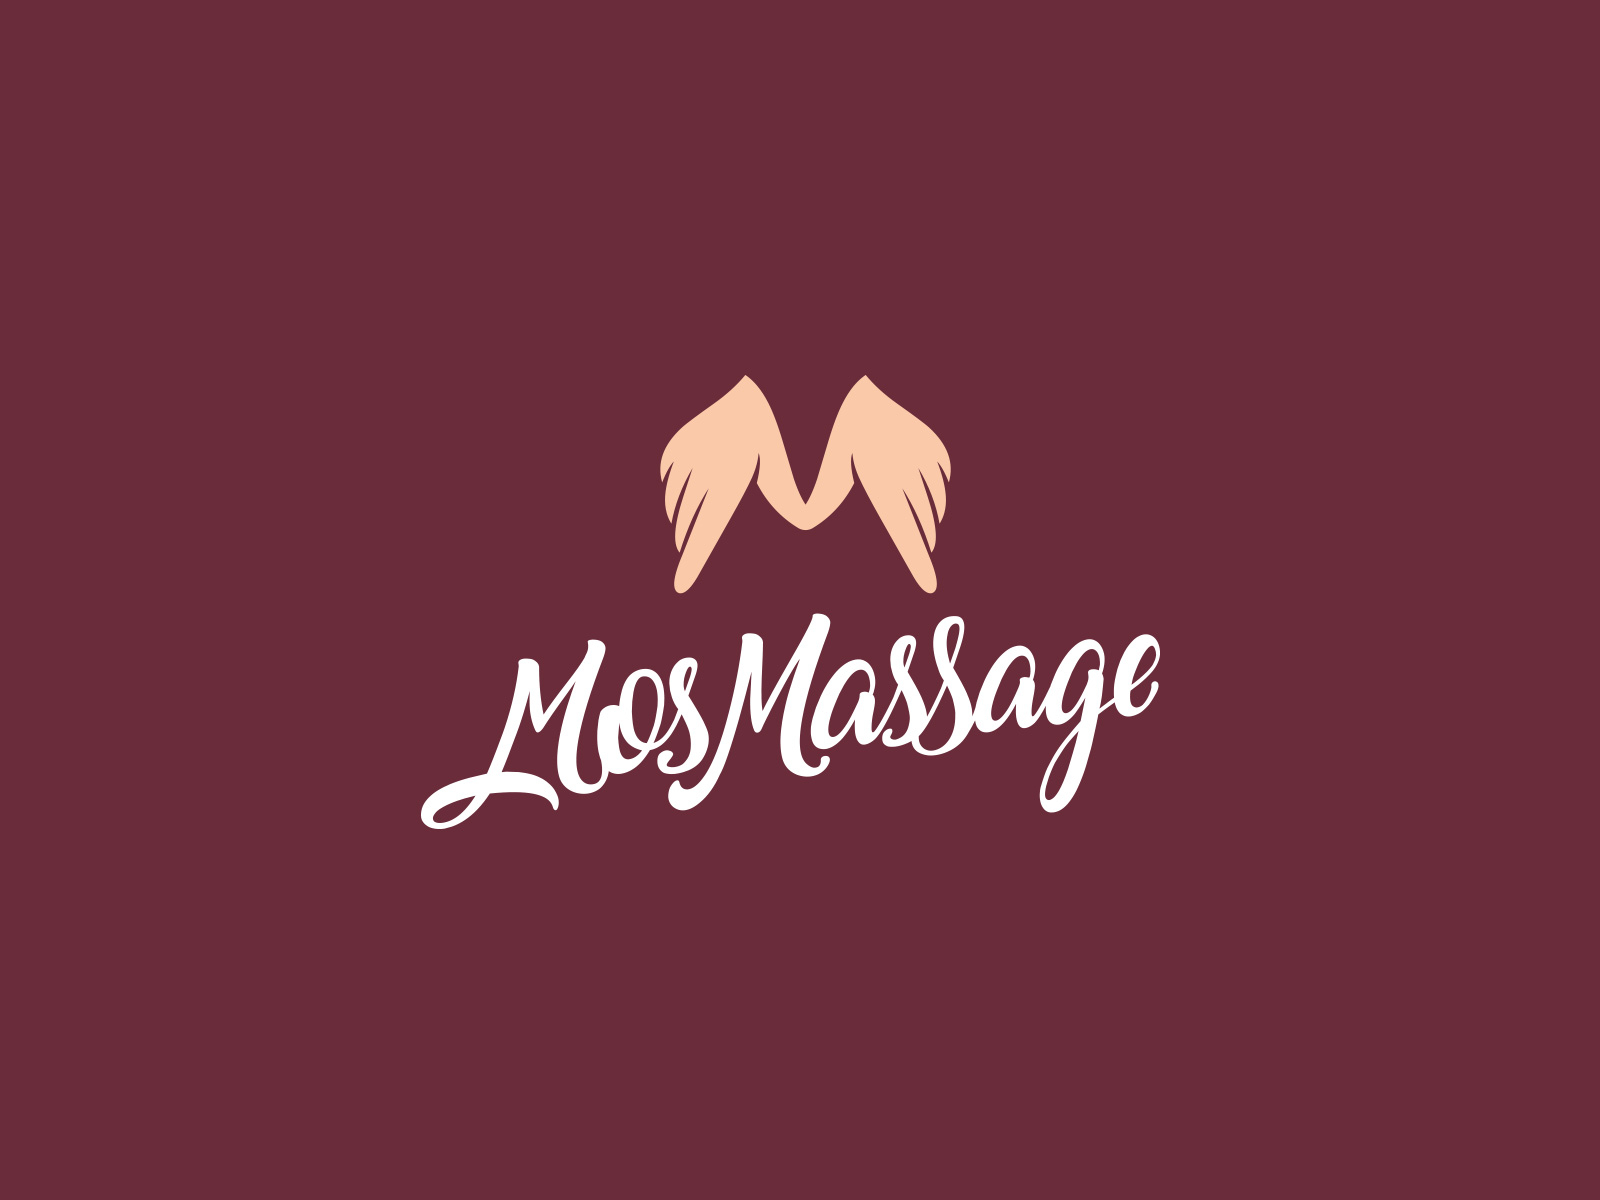 Mos Massage